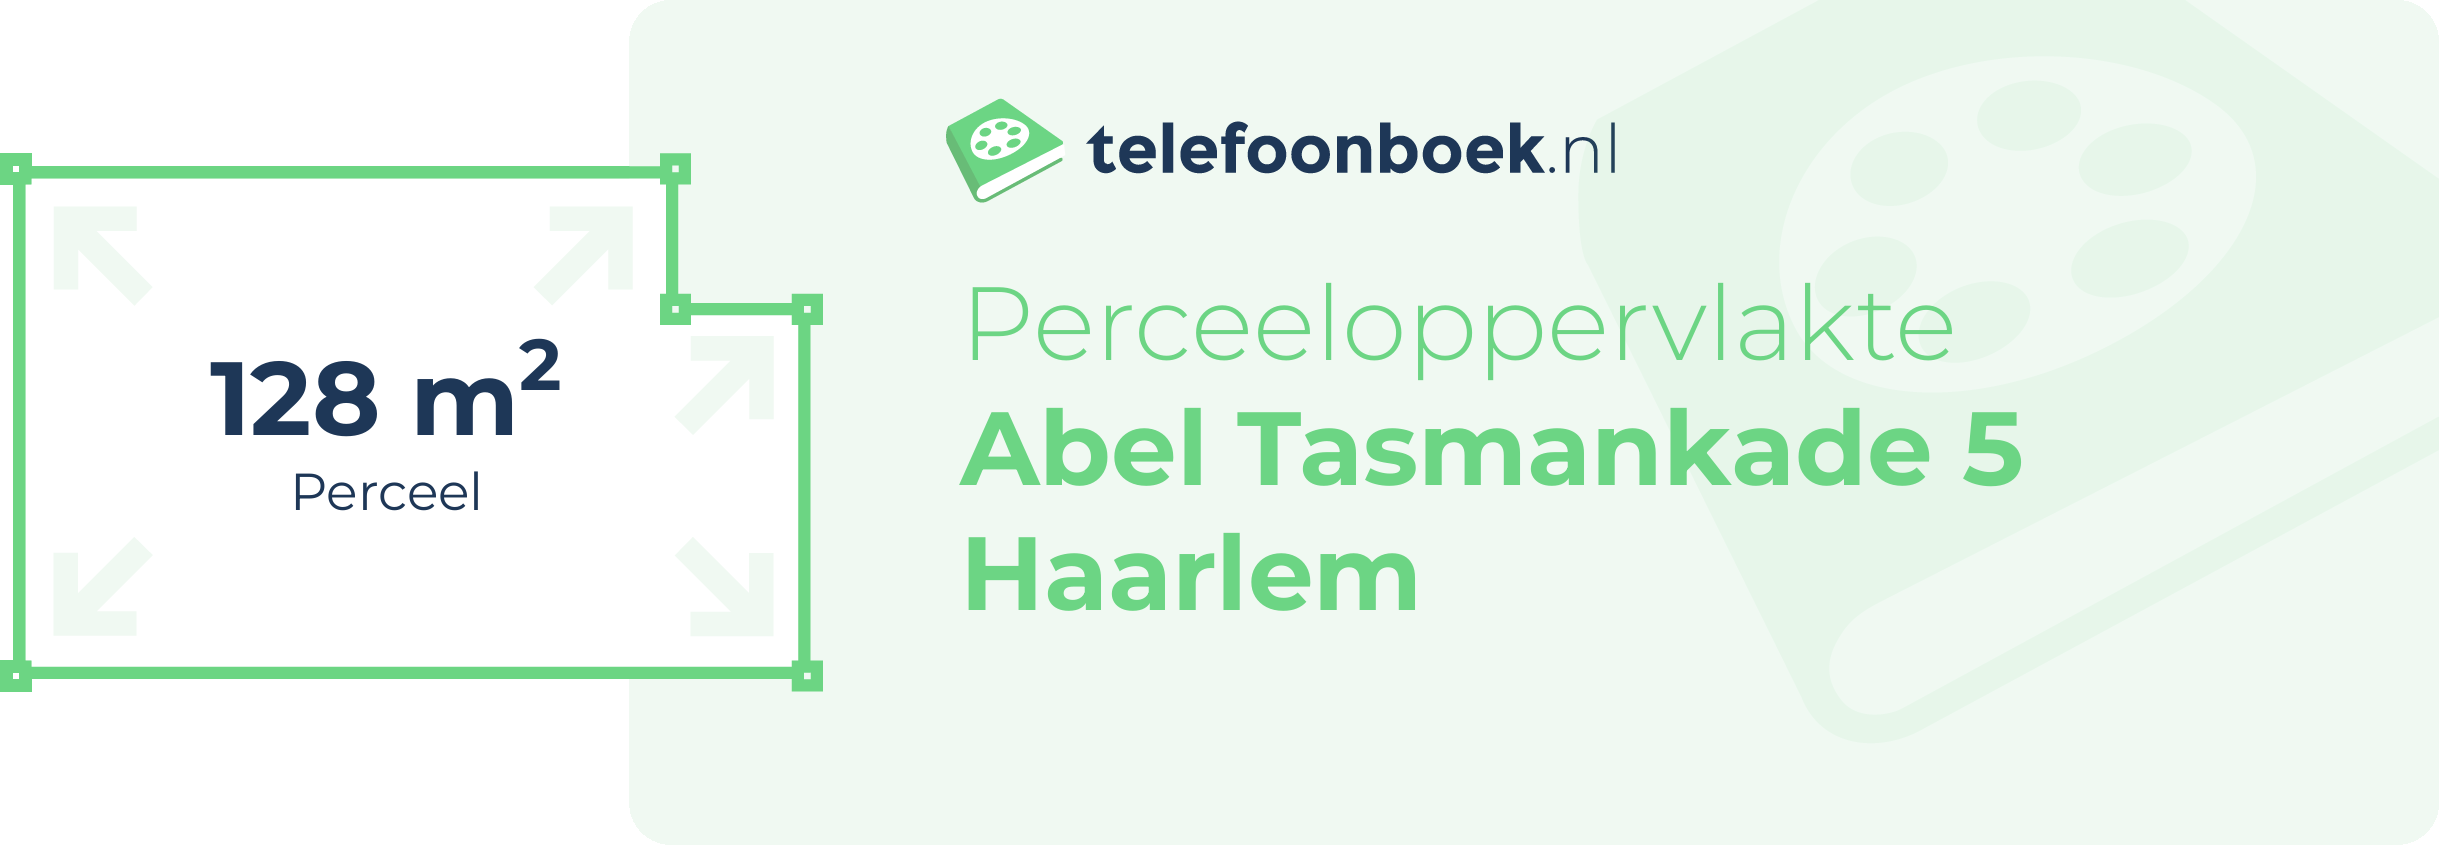 Perceeloppervlakte Abel Tasmankade 5 Haarlem